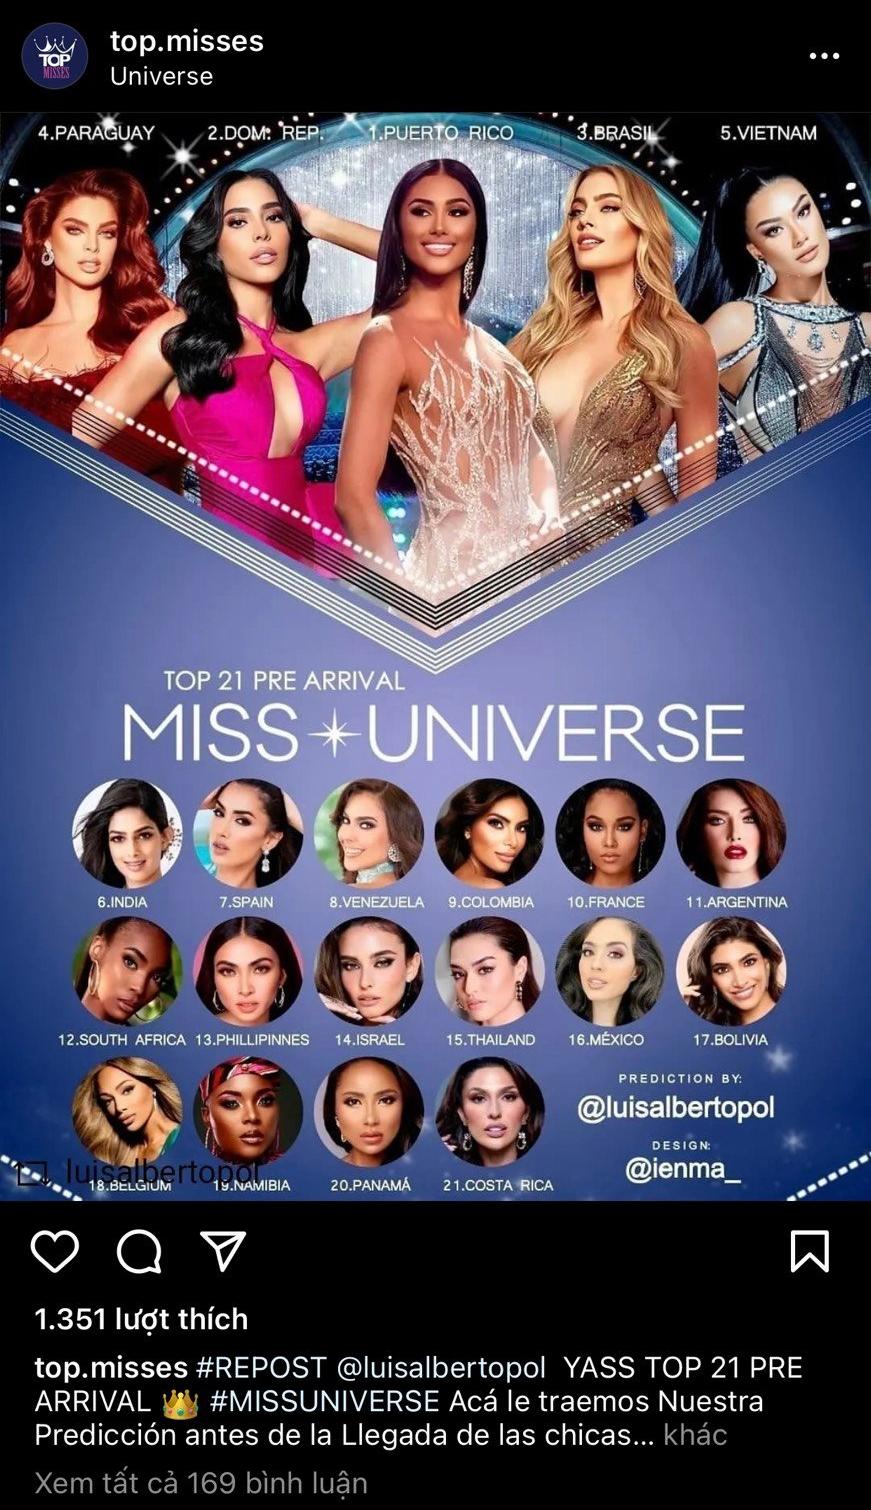 Bảng xếp hạng mới nhất của chuyên trang Top Misses